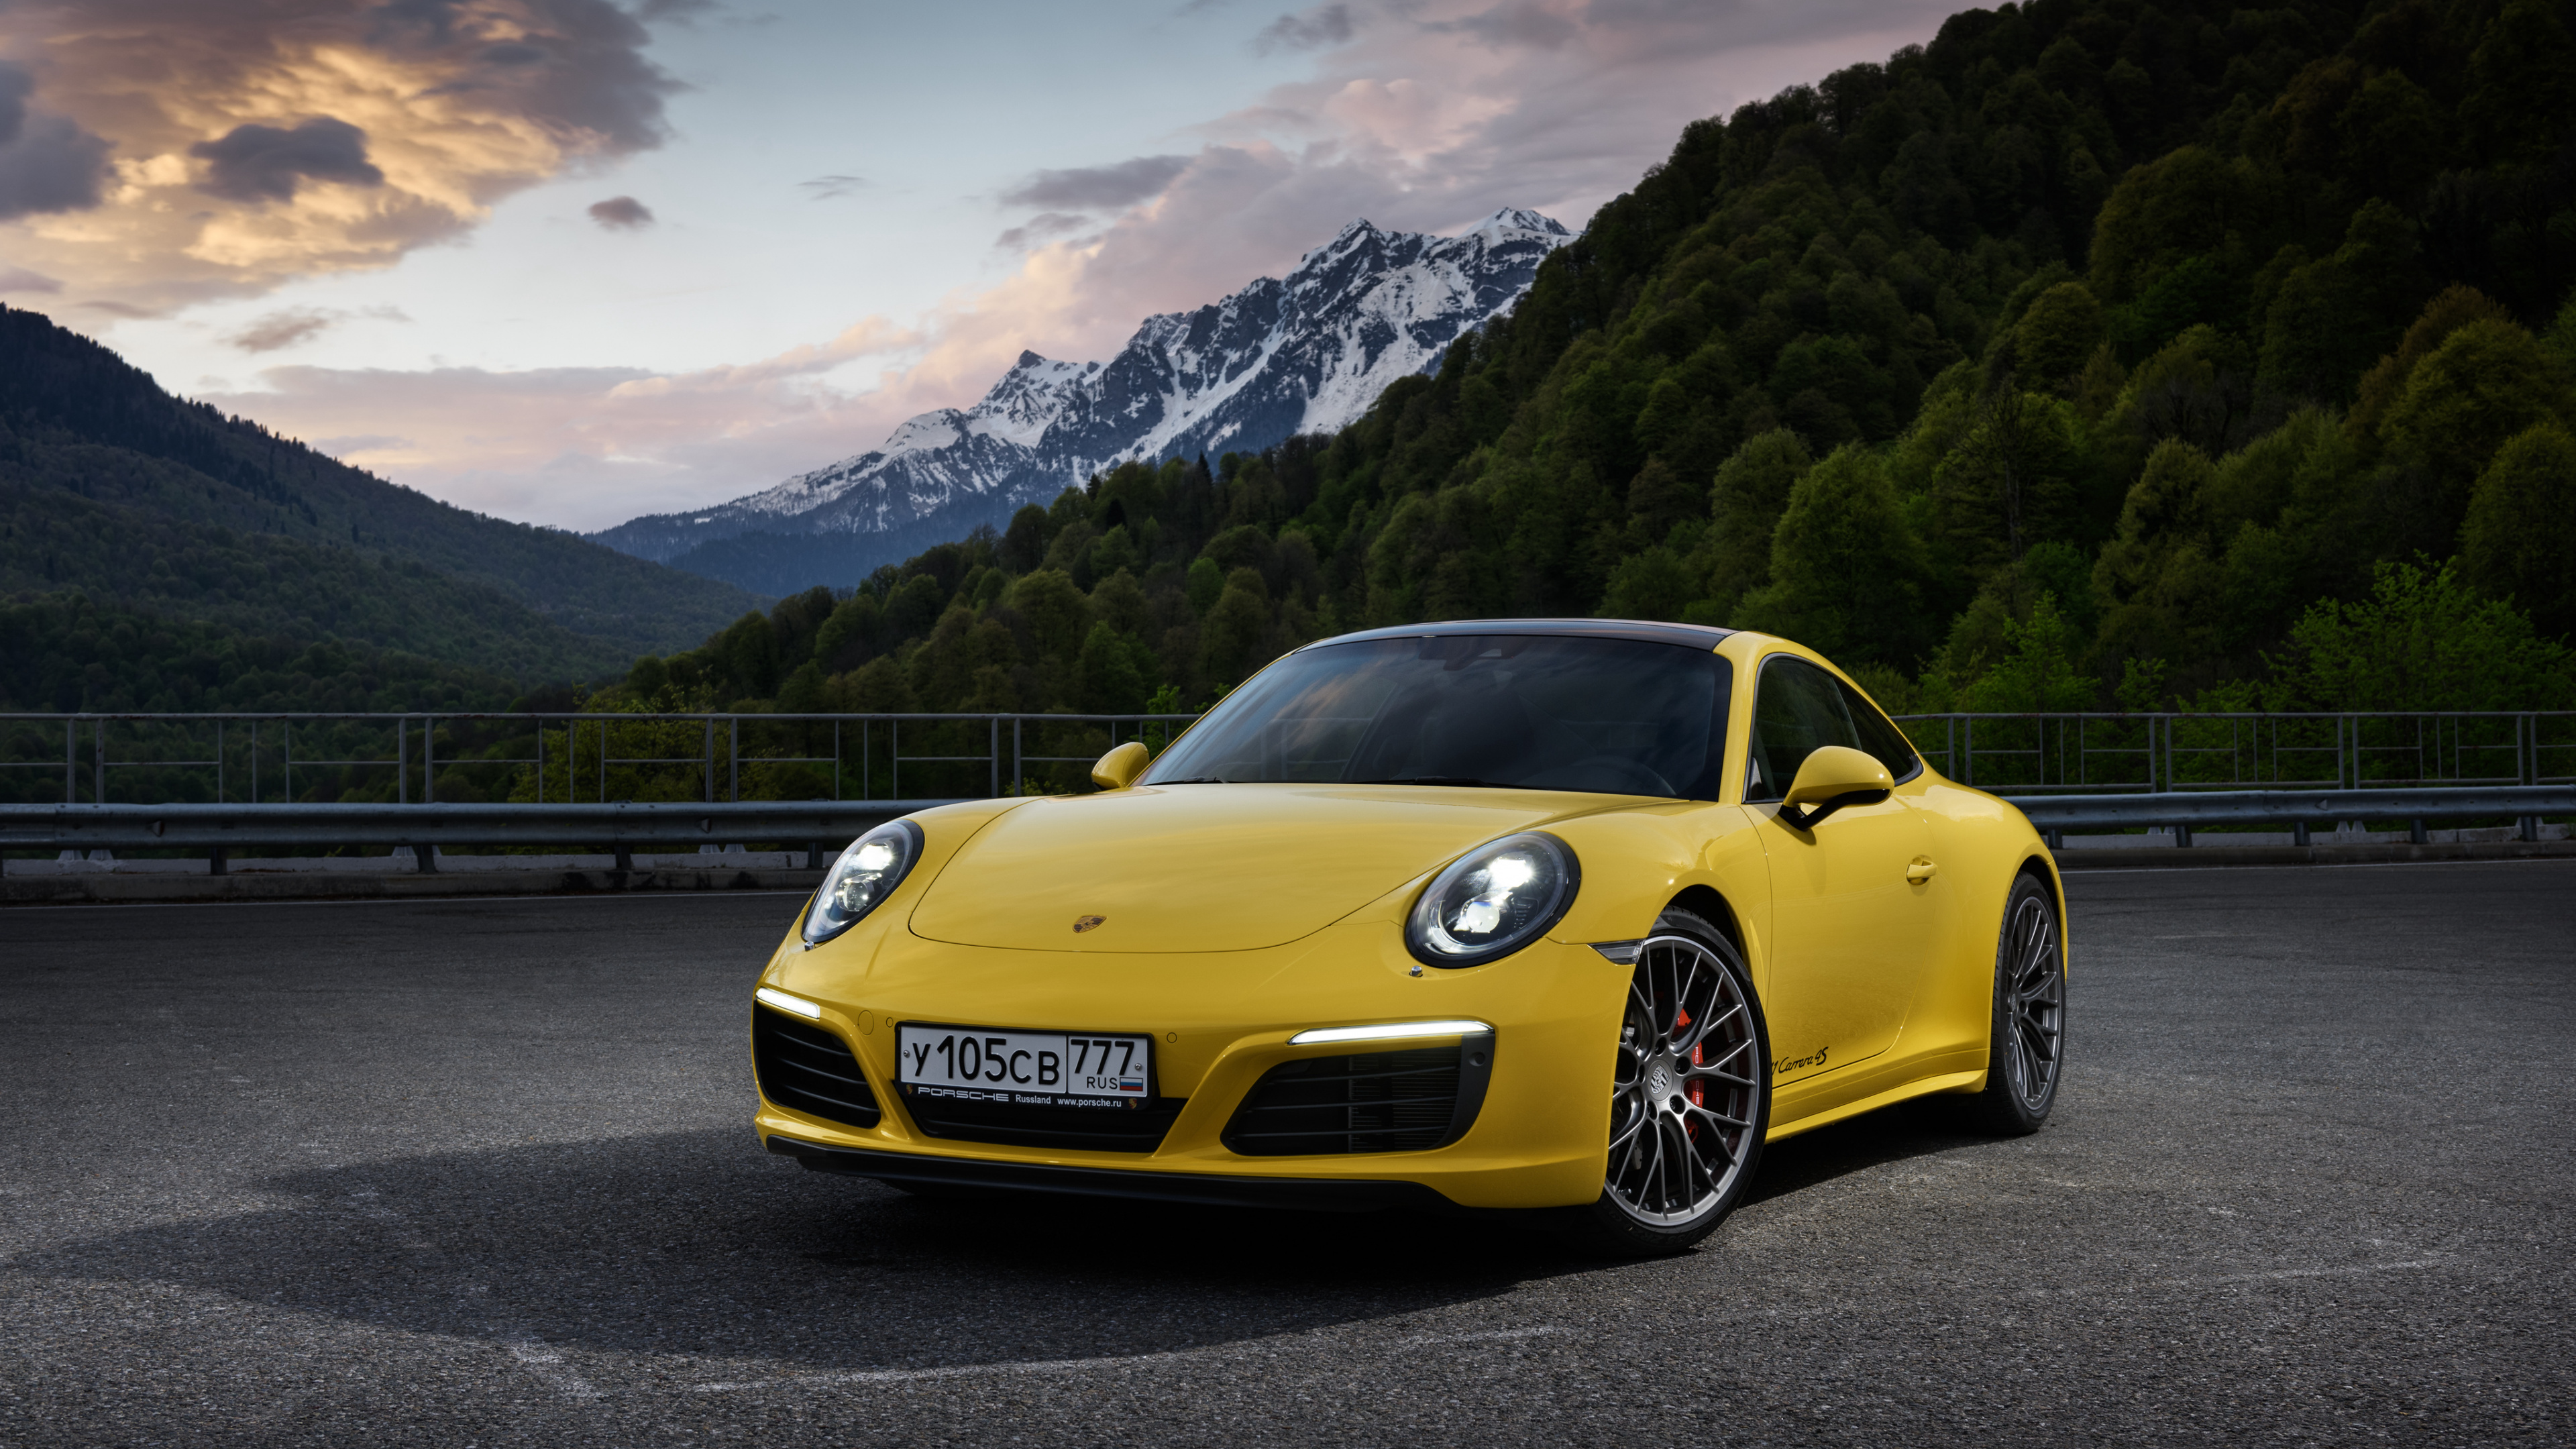 Gelber Porsche 911 Auf Der Straße in Der Nähe Des Berges Tagsüber. Wallpaper in 3840x2160 Resolution